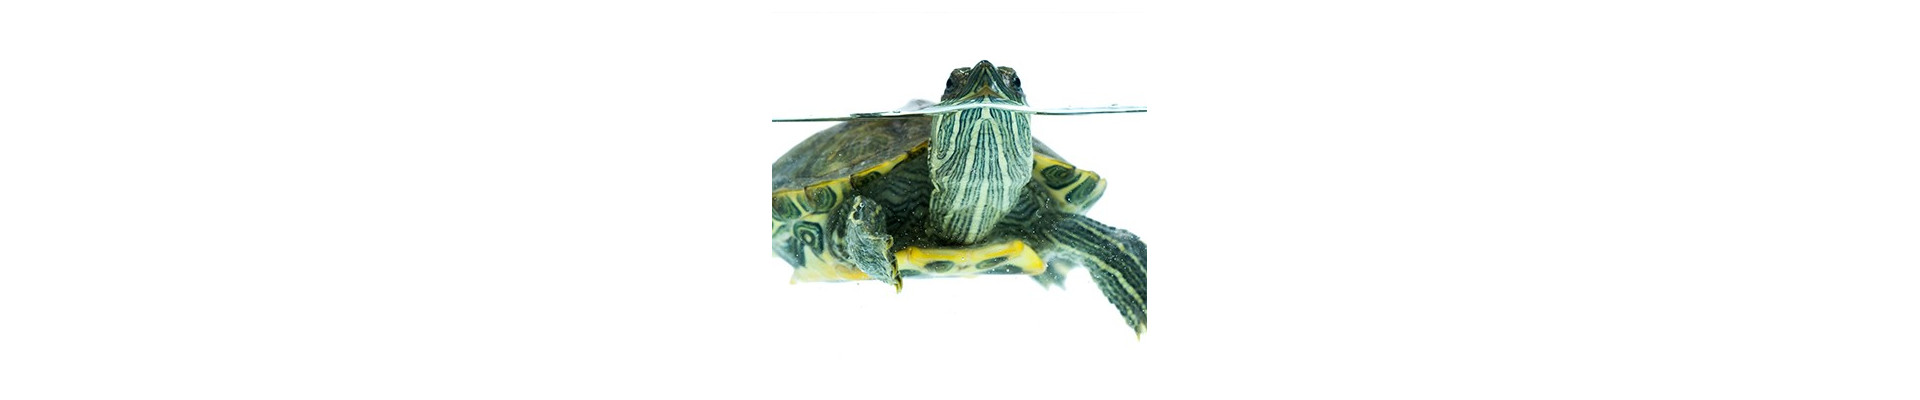 Acondicionadores y suplementos para tortugas y reptiles